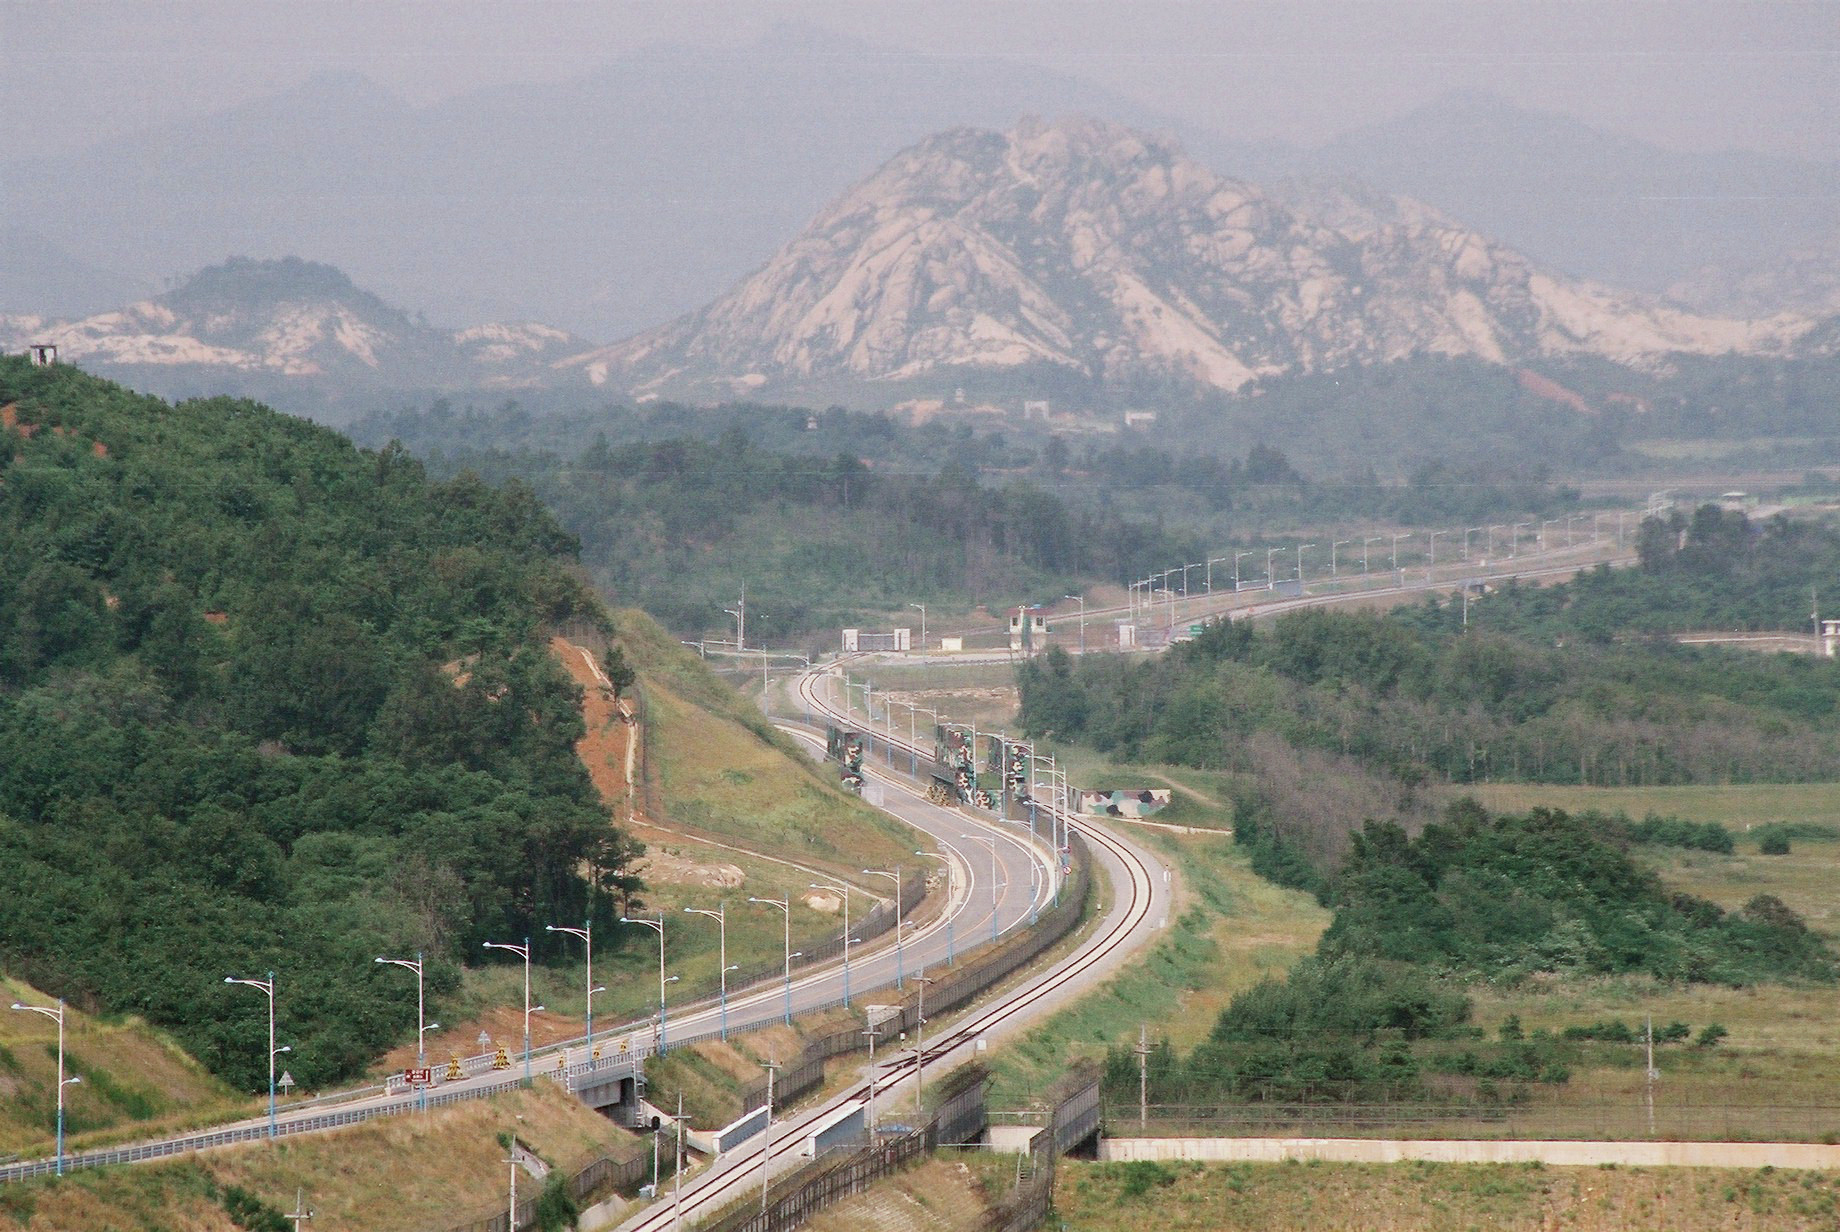 Nyomulnak a kínaiak a dél-koreai földpiacon